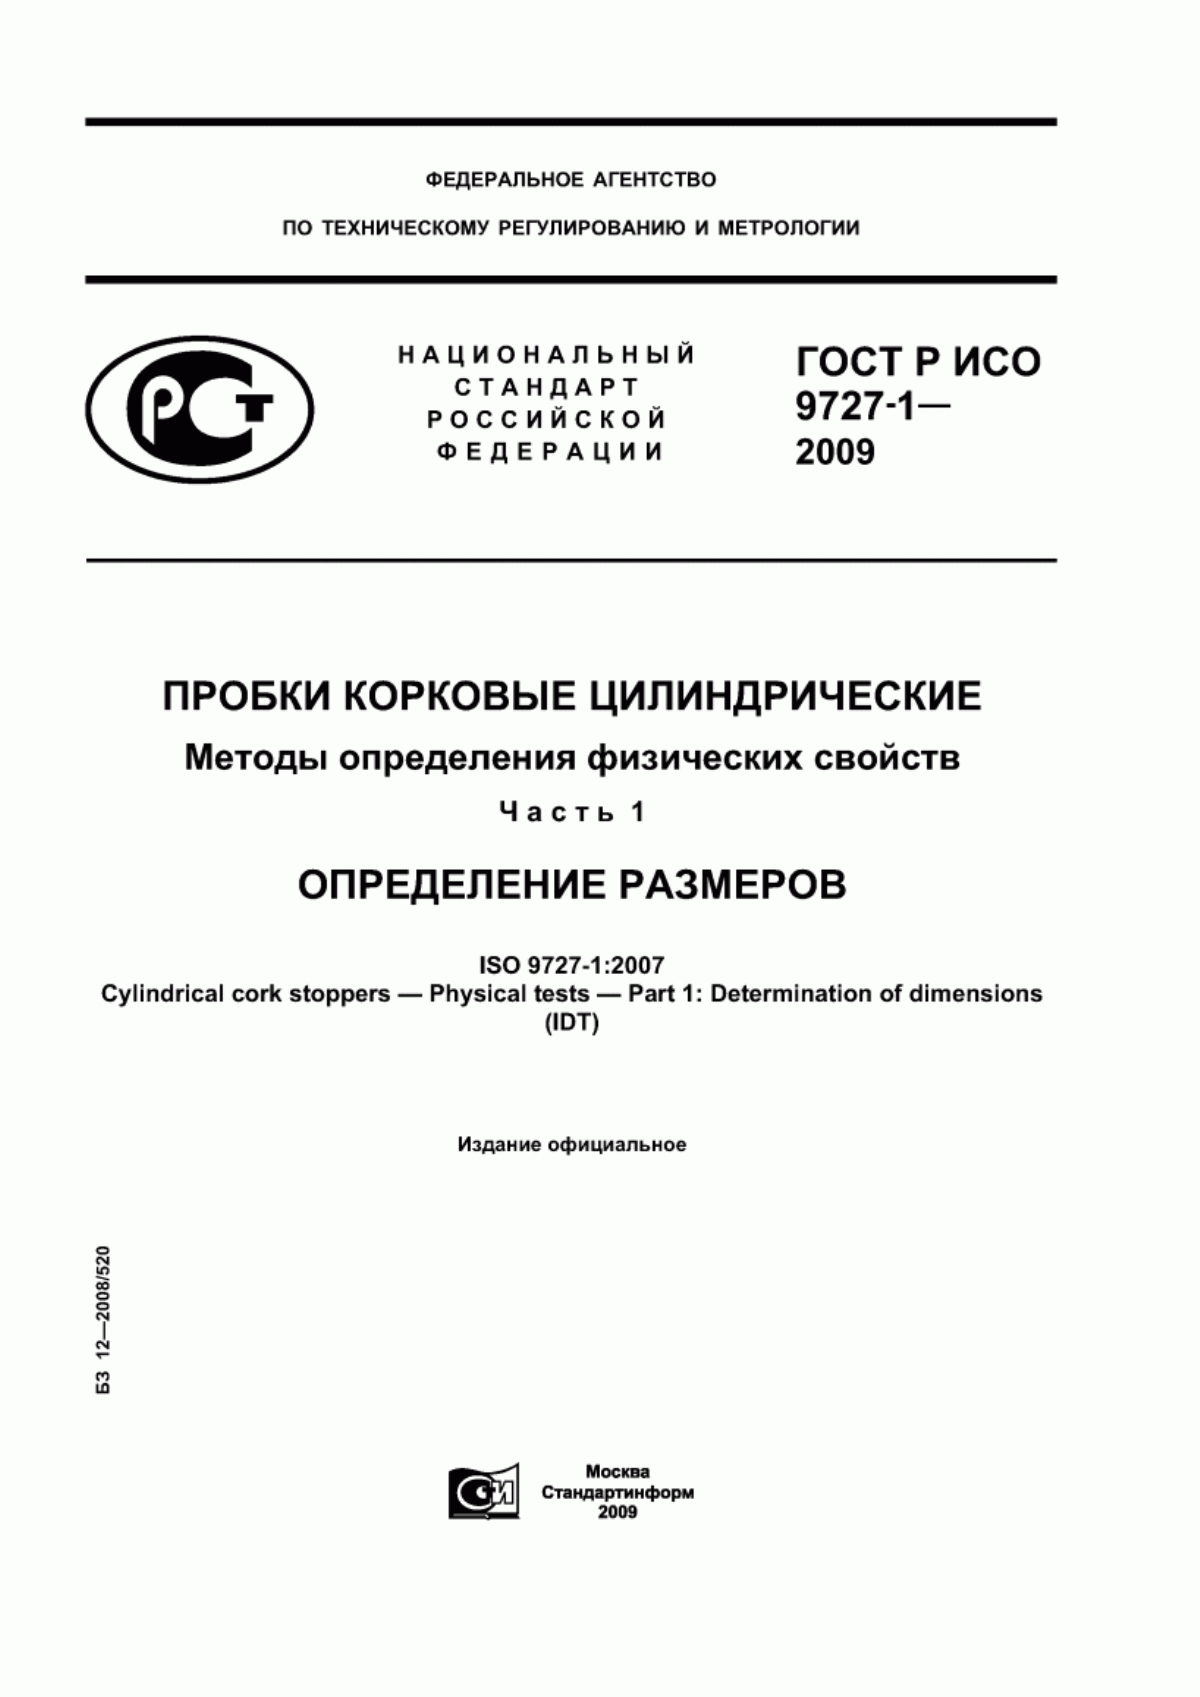 ГОСТ Р ИСО 9727-1-2009 Пробки корковые цилиндрические. Методы определения физических свойств. Часть 1. Определение размеров